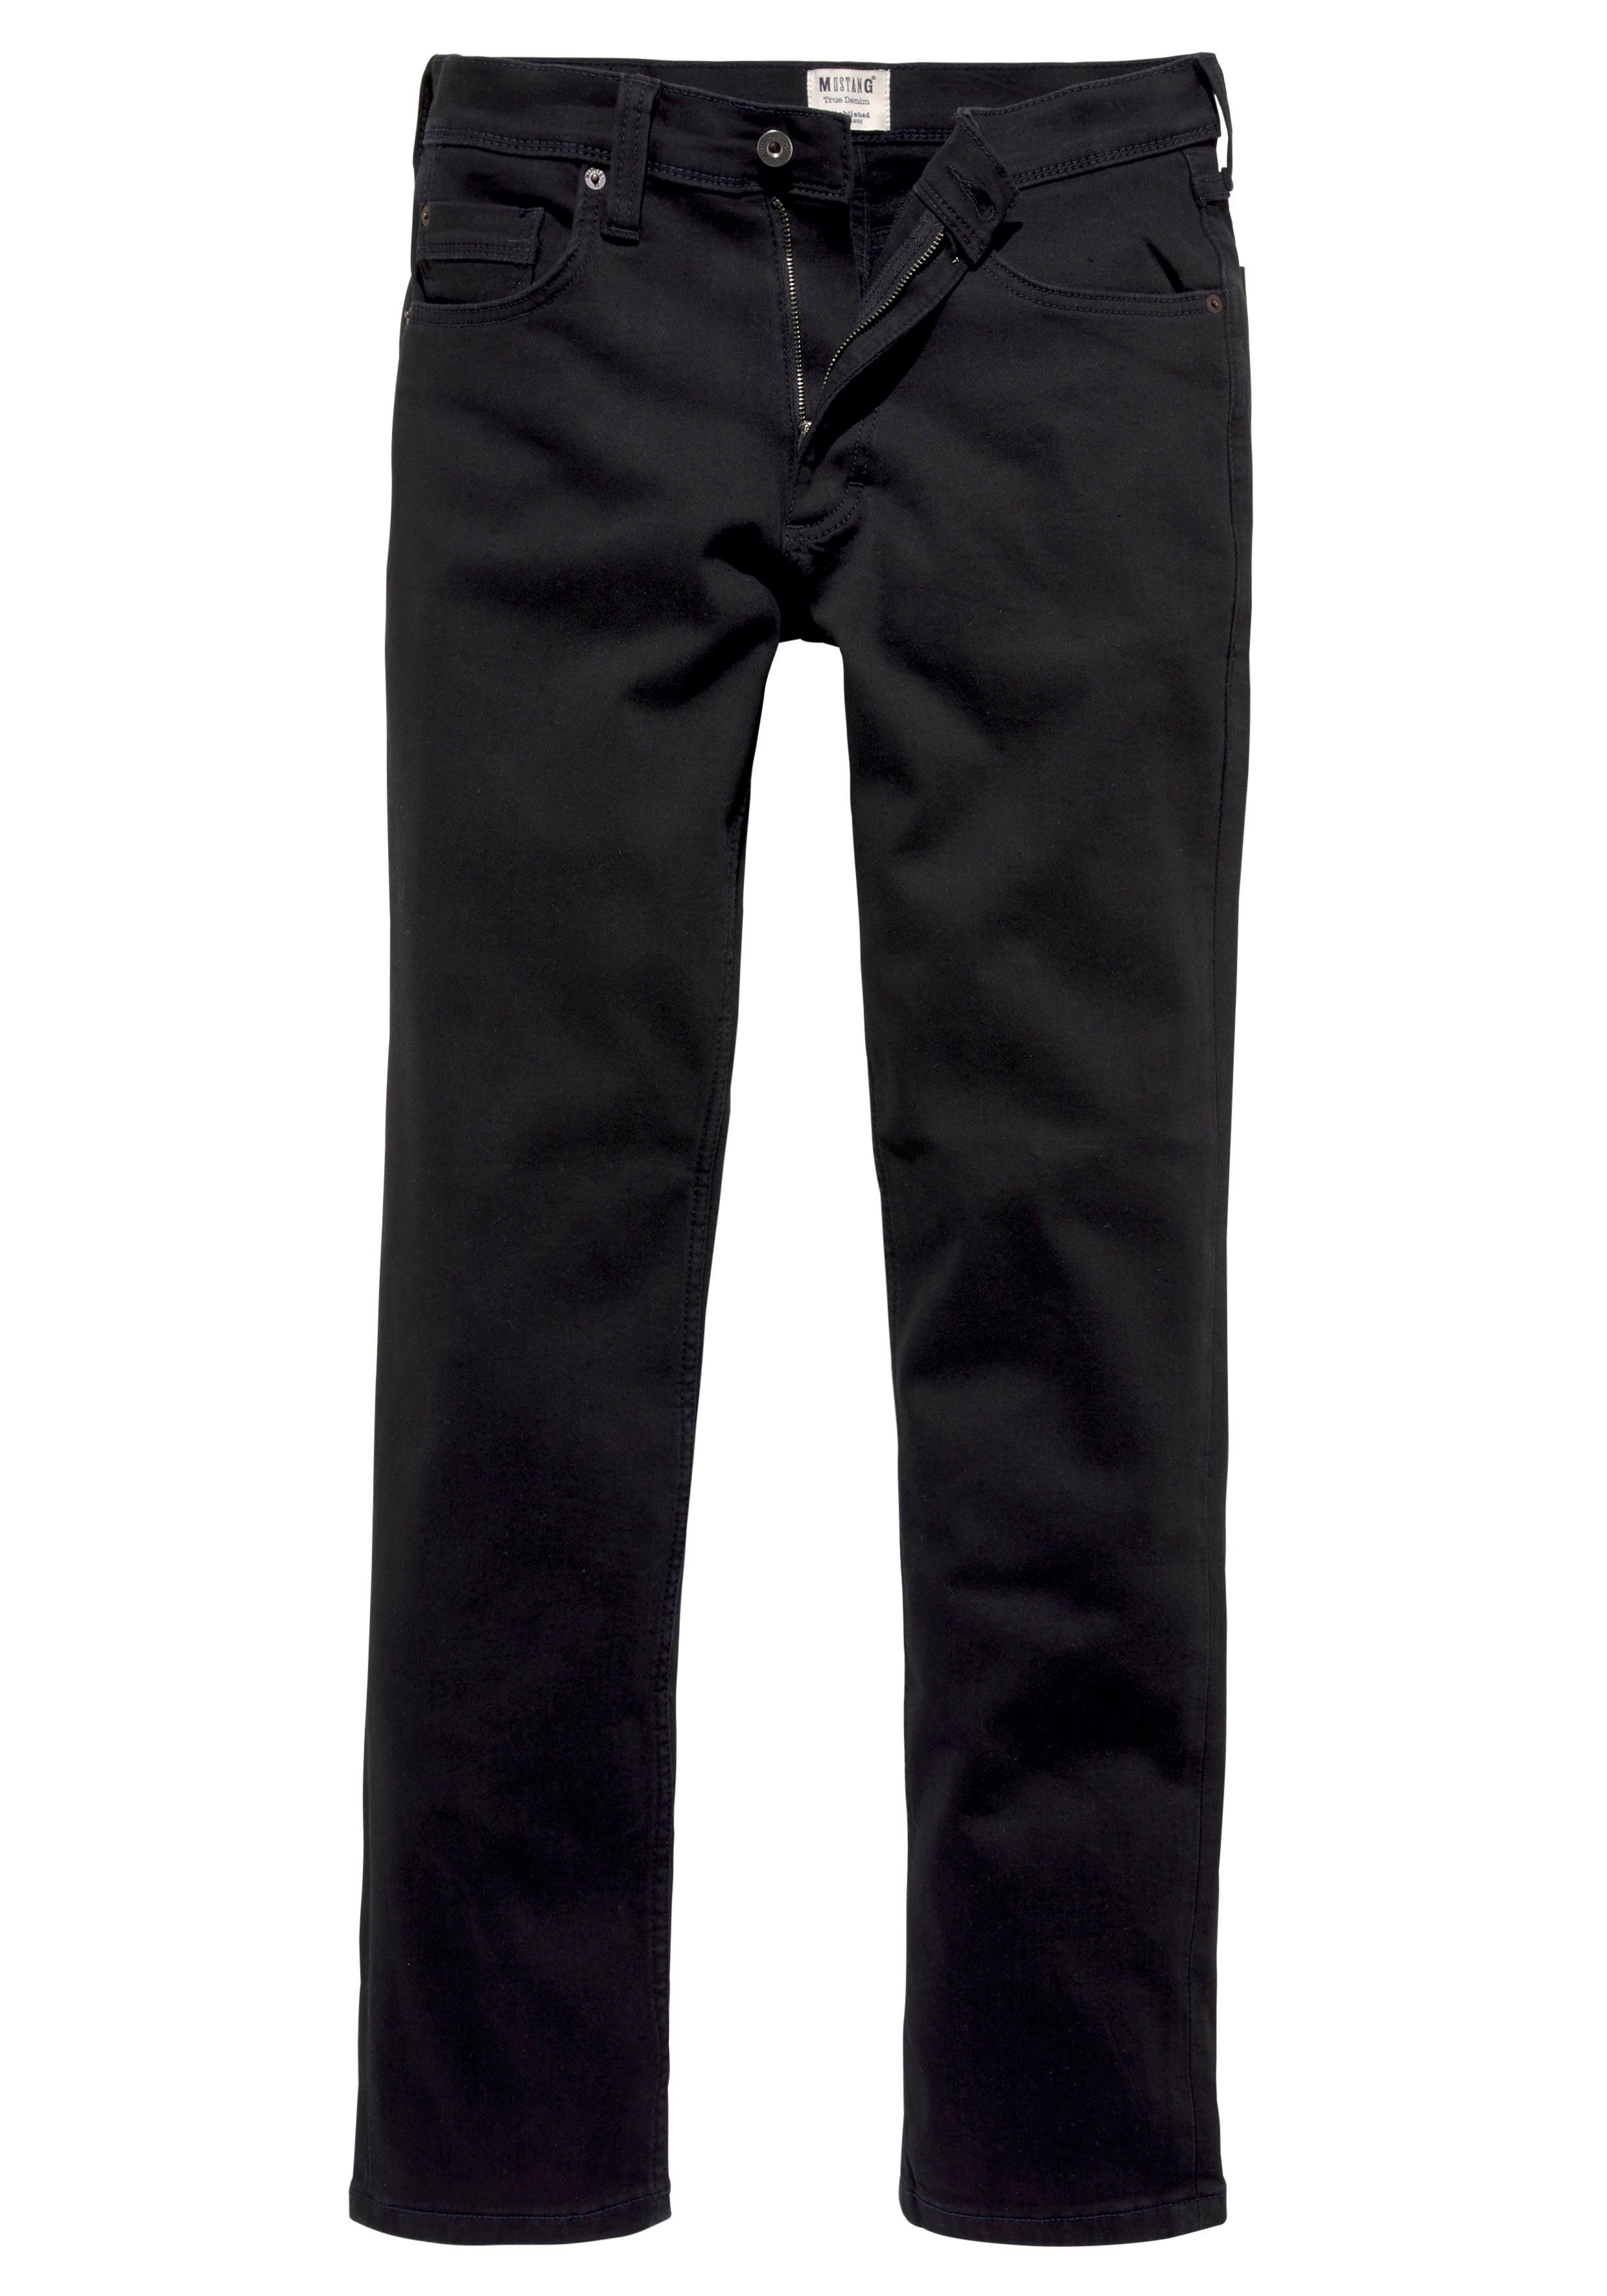 MUSTANG 5-Pocket-Jeans Style Washington Straight mit leichten Abriebeffekten black-denim